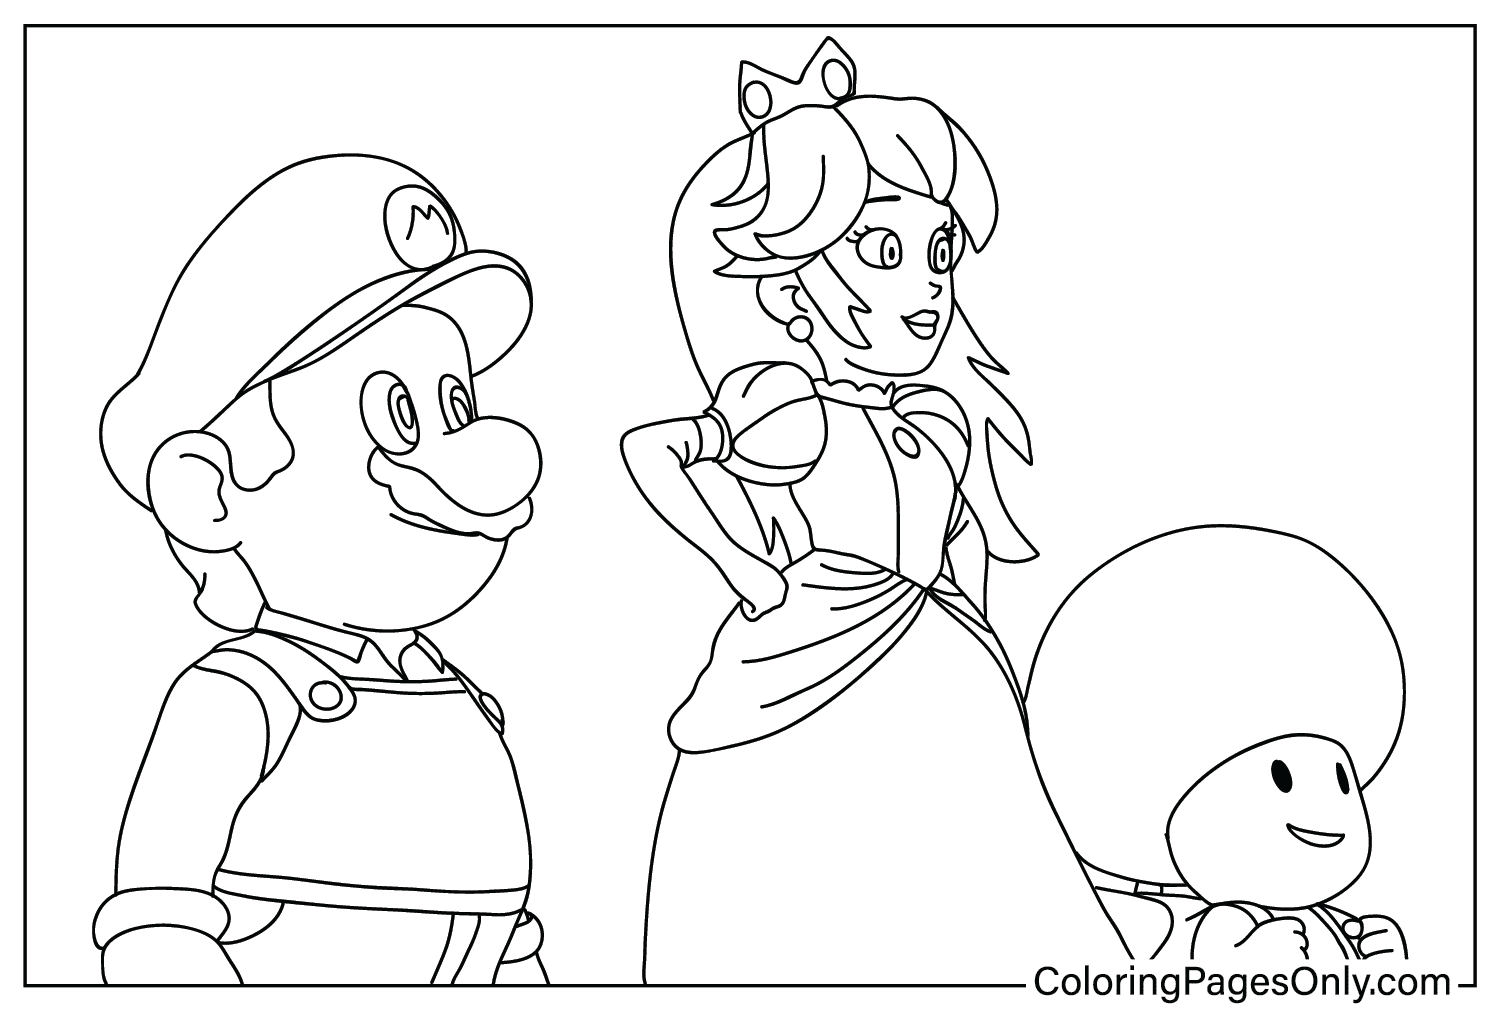 Раскраска Марио, принцесса и жаба из фильма Super Mario Bros.